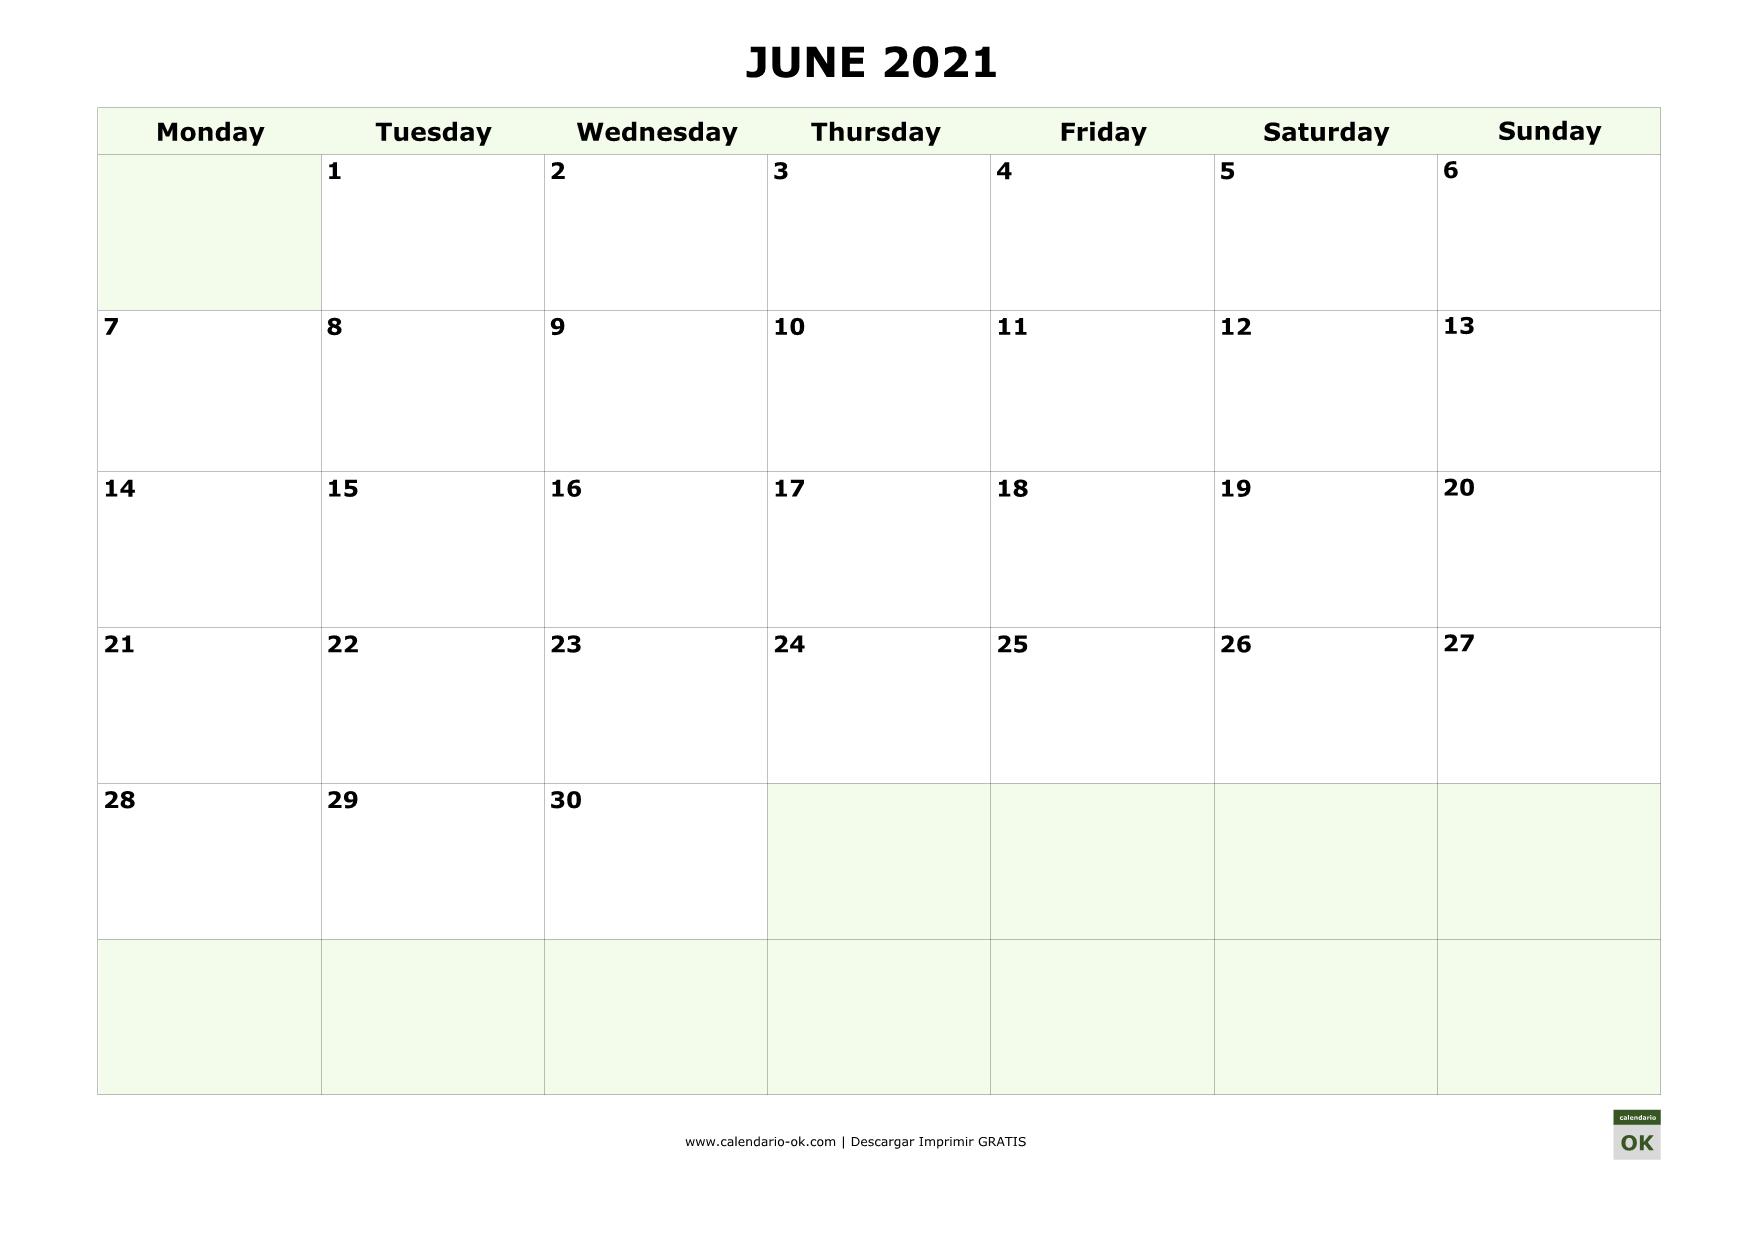 JUNIO 2021 calendario en INGLES